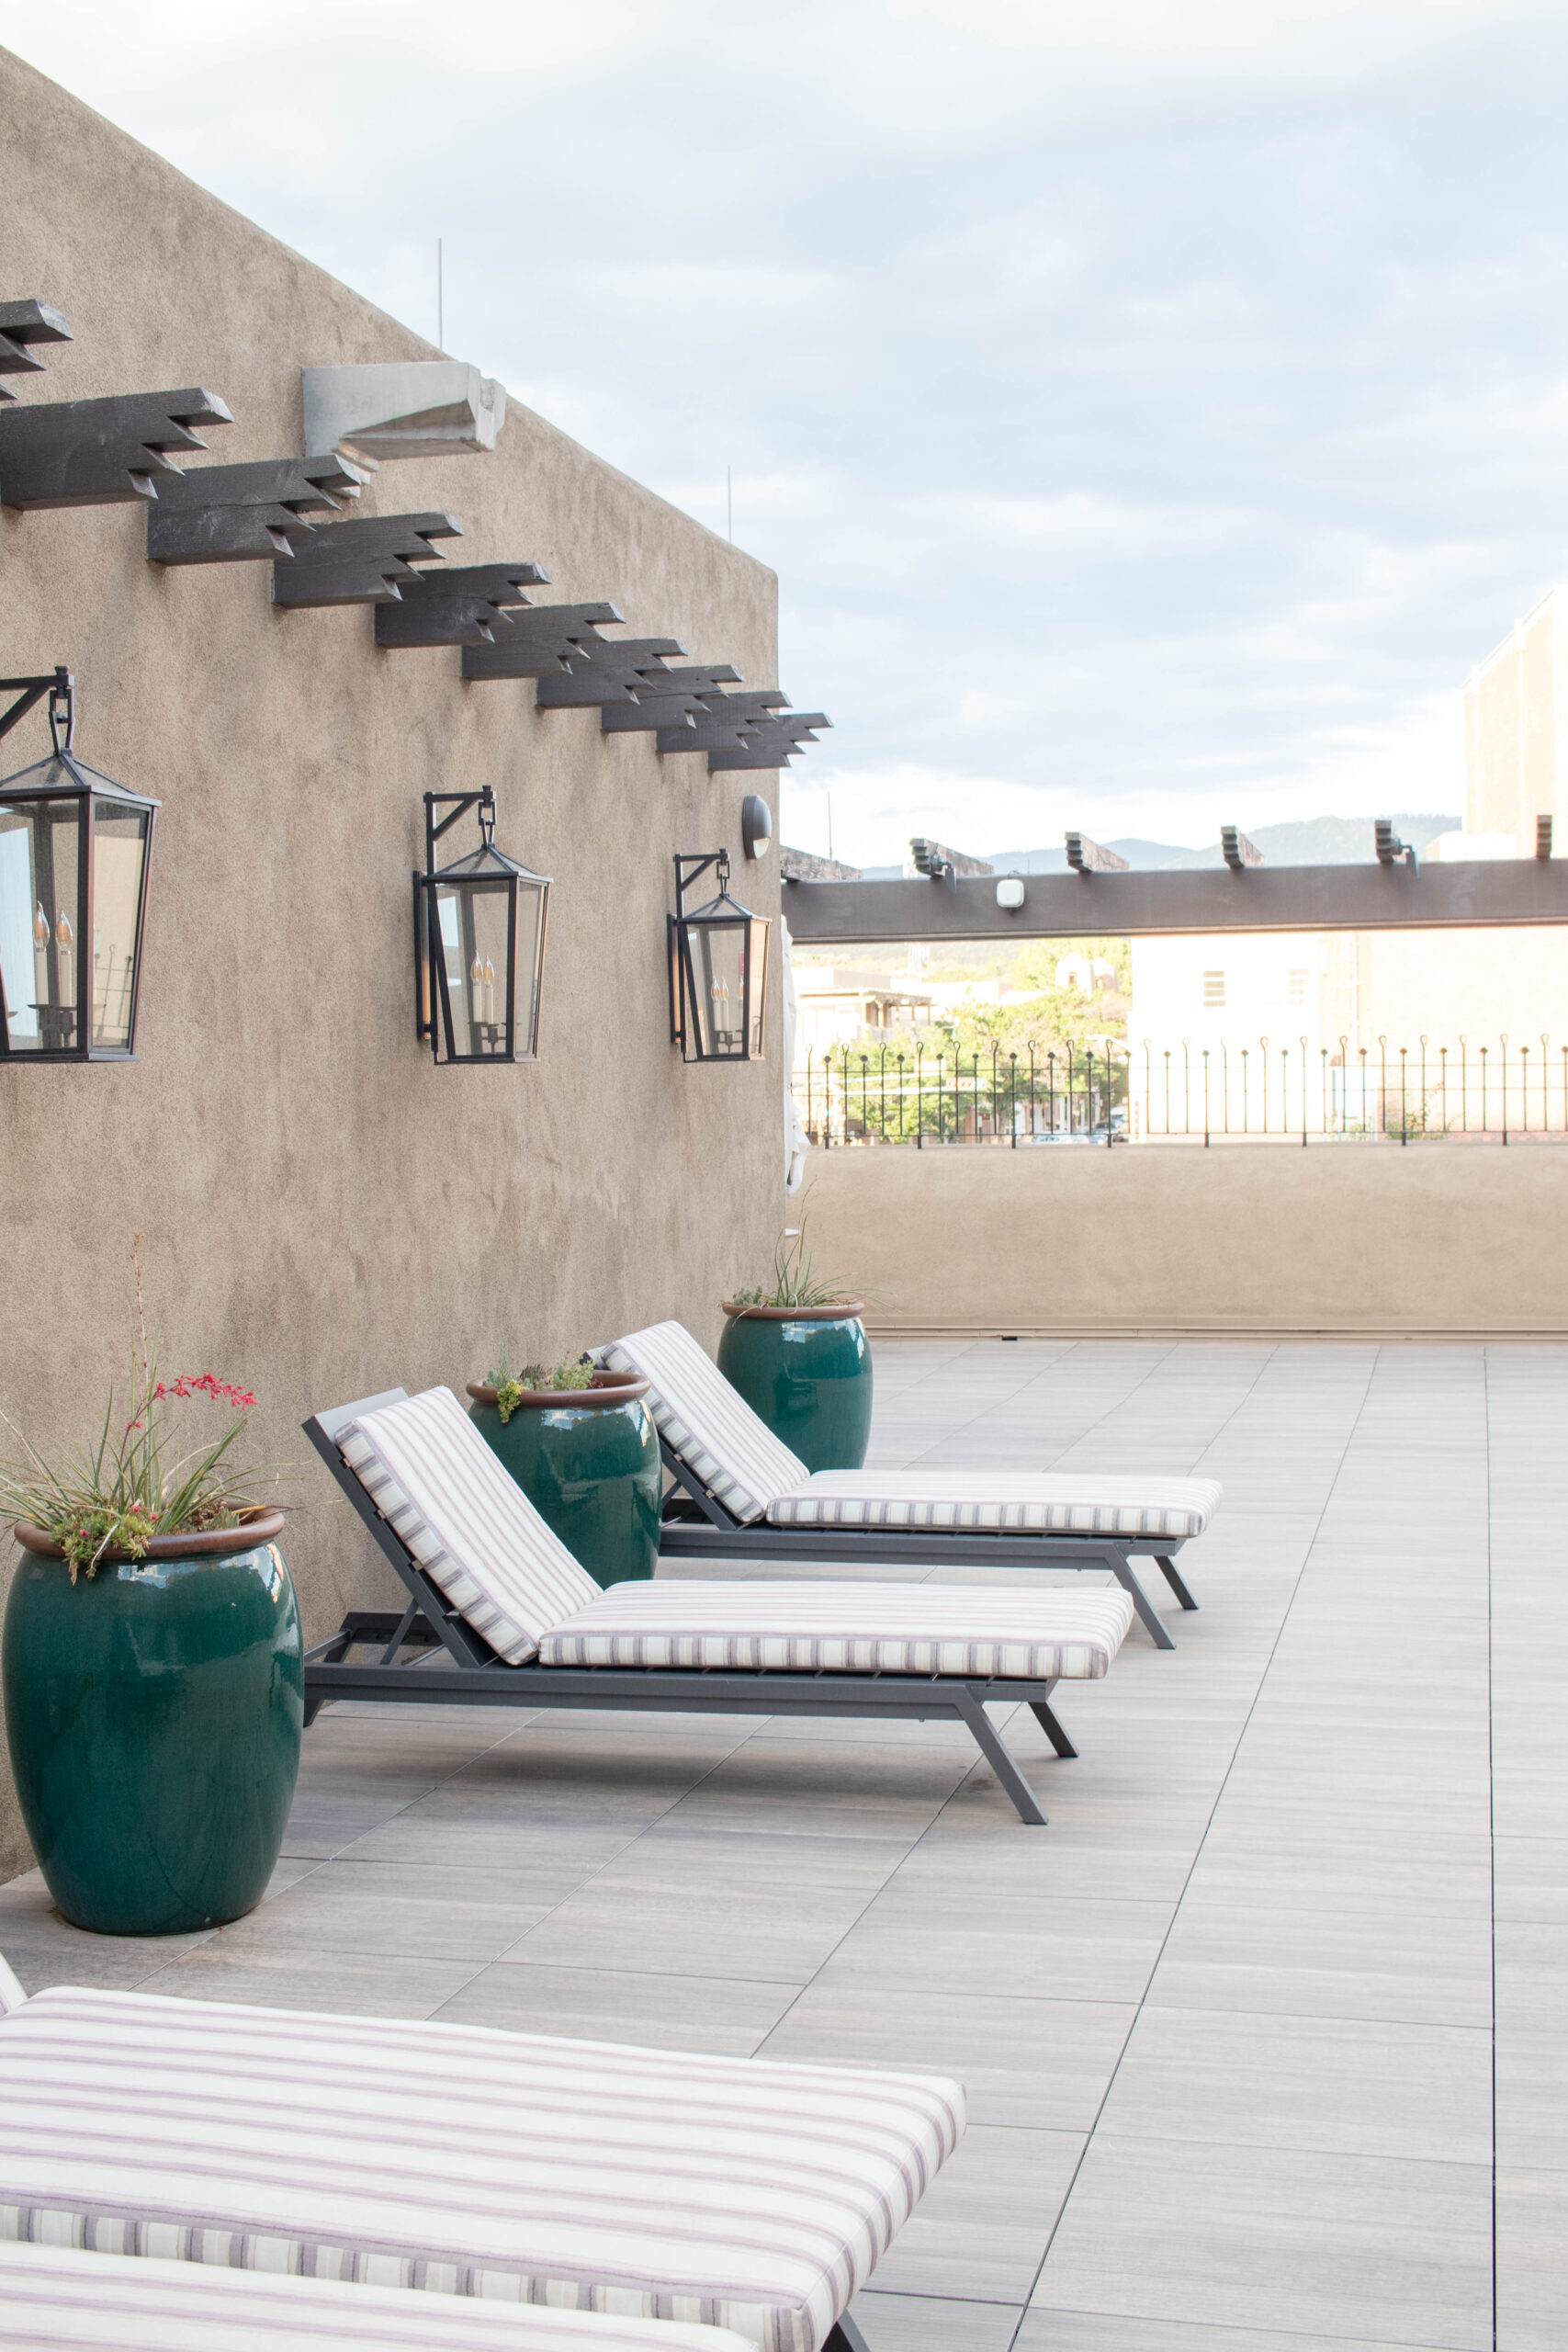 rooftop bar patio eldorado hotel and spa santa fe new mexico #santafe #eldoradohotel #newmexicotrue